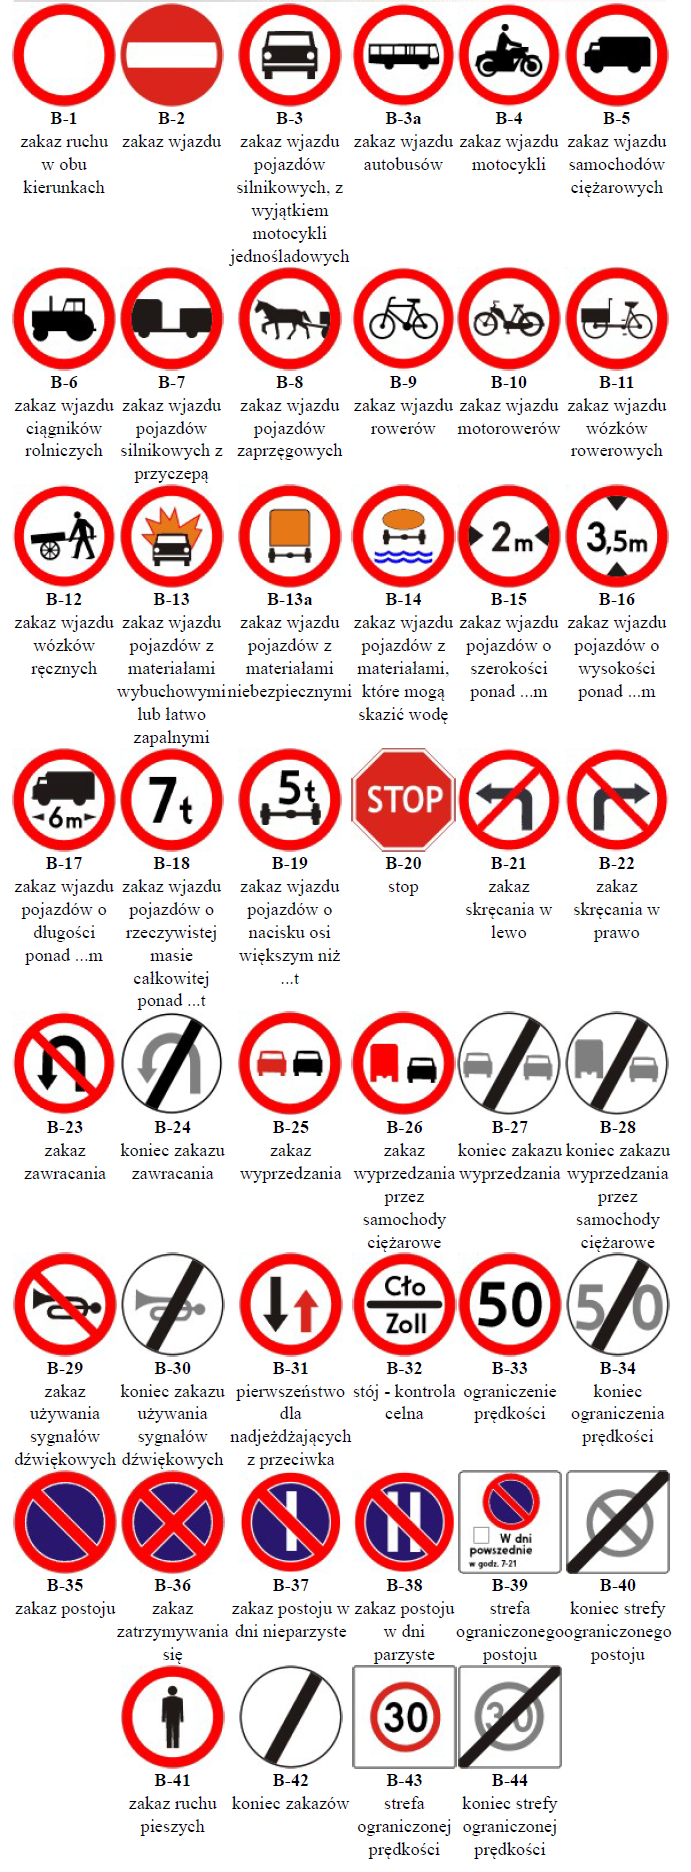 Sprawdzian Znaki Drogowe Klasa 4 Pdf Bezpieczna droga ze znakami - zspomoce